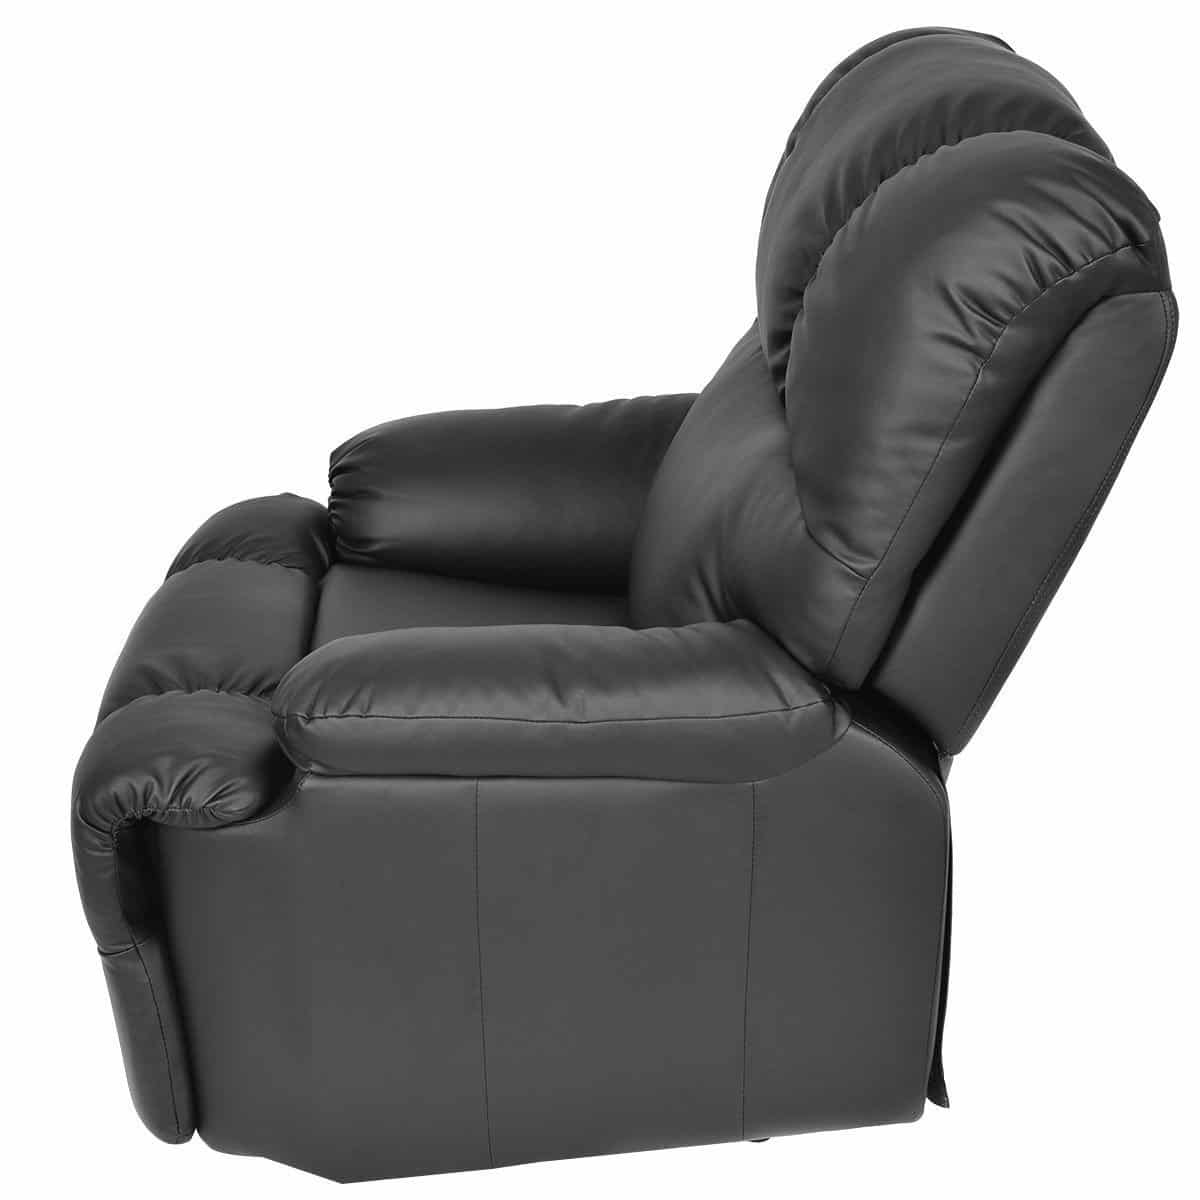 Waterjoy Massage Recliner Chair with Heat